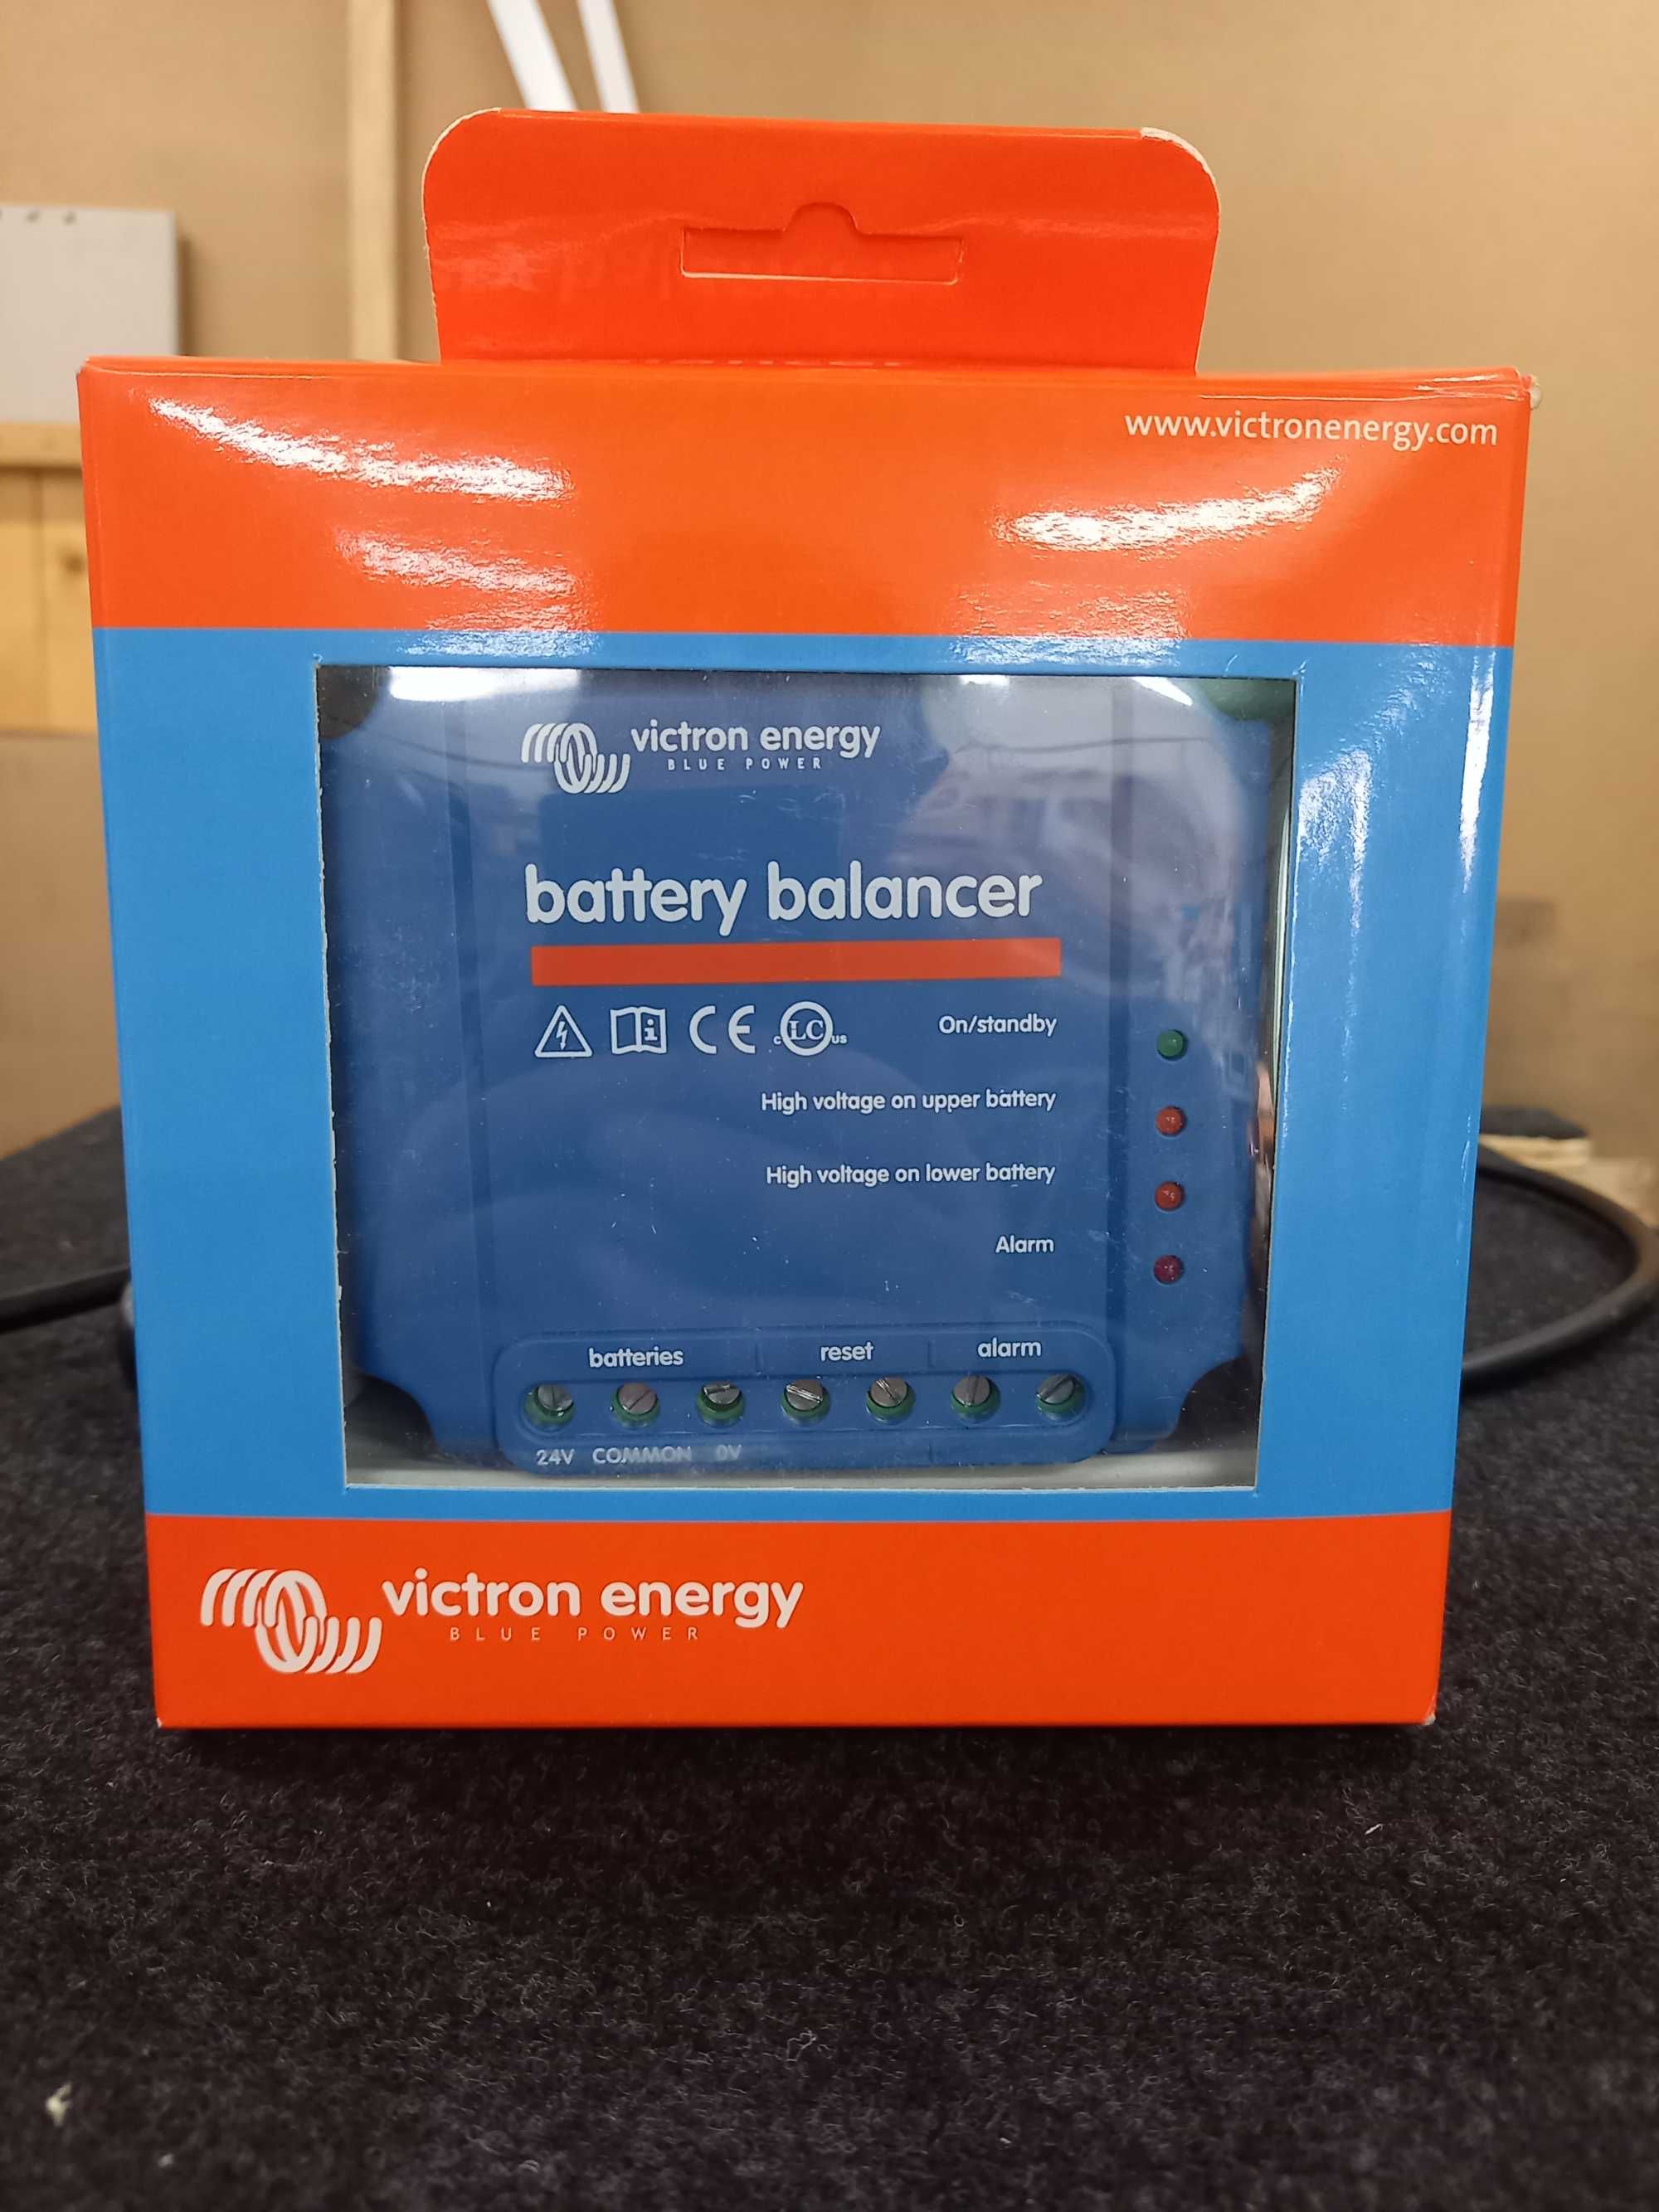 НОВ Victron Energy battery balancer- Балансьор за батерии